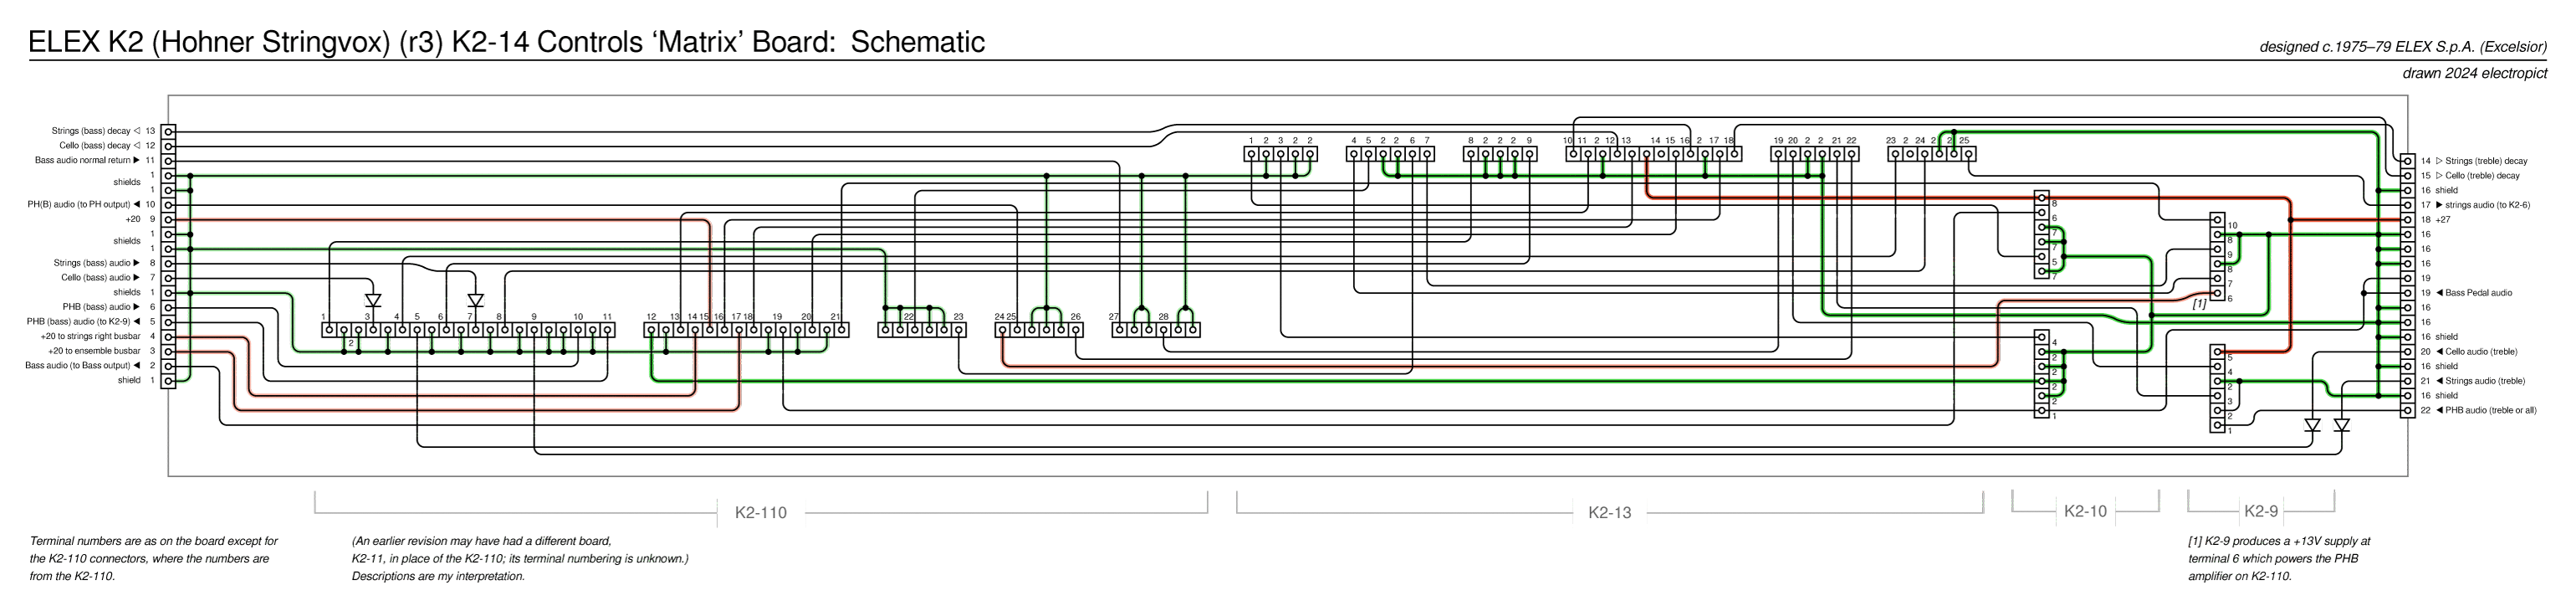 K2r3 K2-14 board schematic